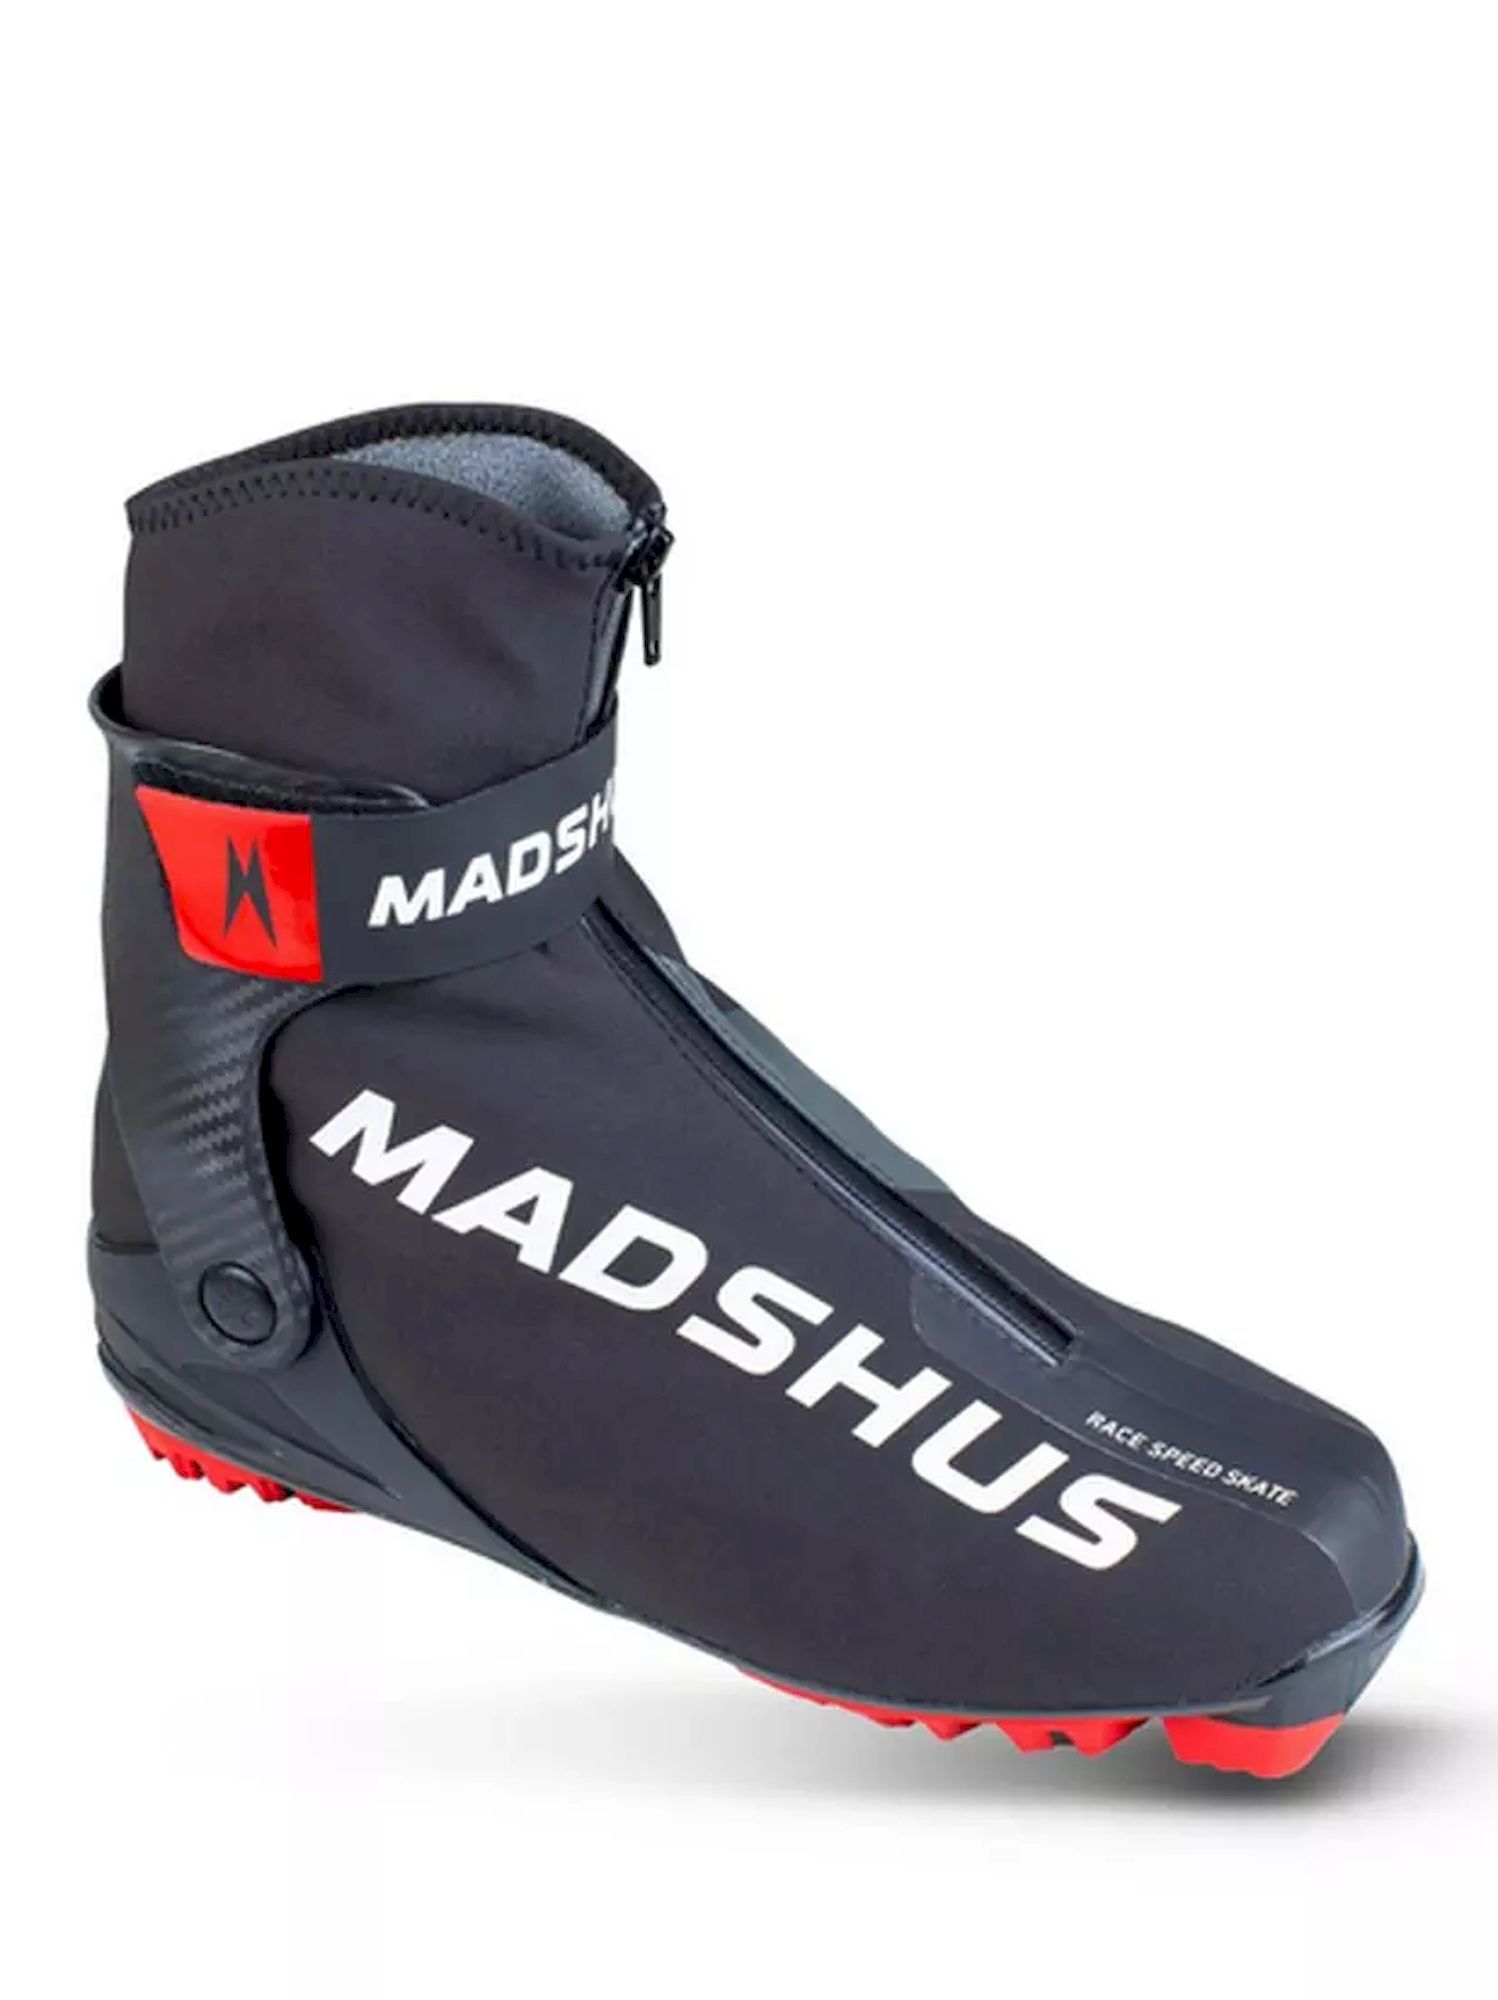 Madshus Race Speed Skate - Hiihtokengät | Hardloop